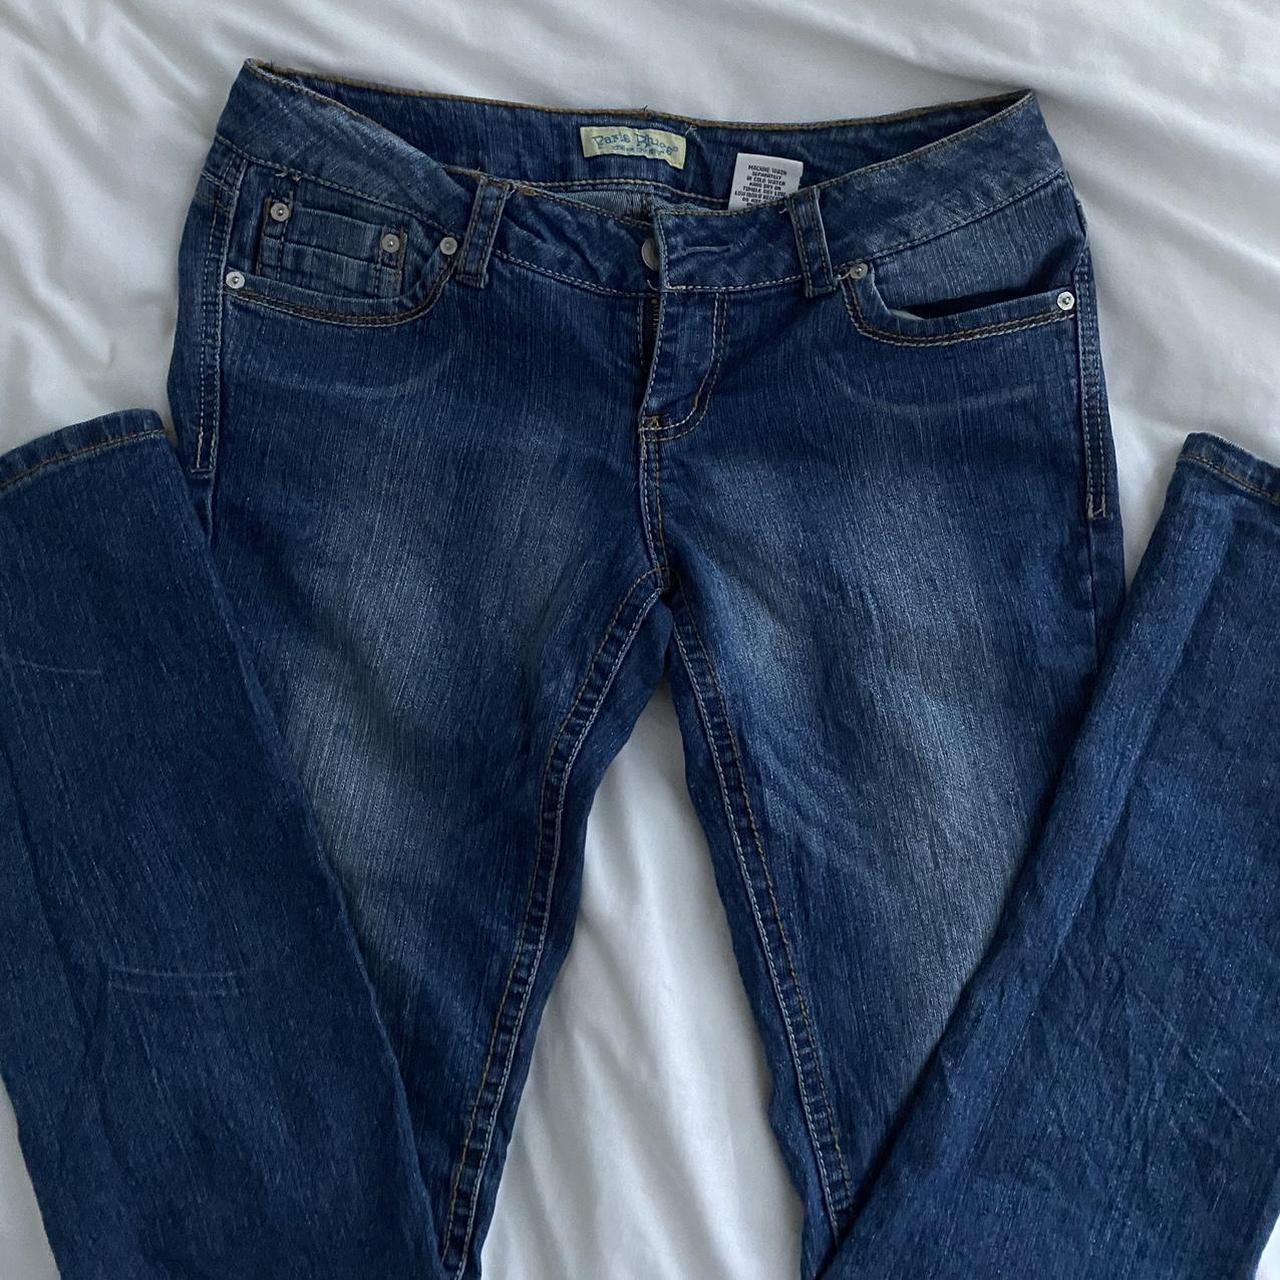 paris blues vintage jeans size 9 no noticeable... - Depop